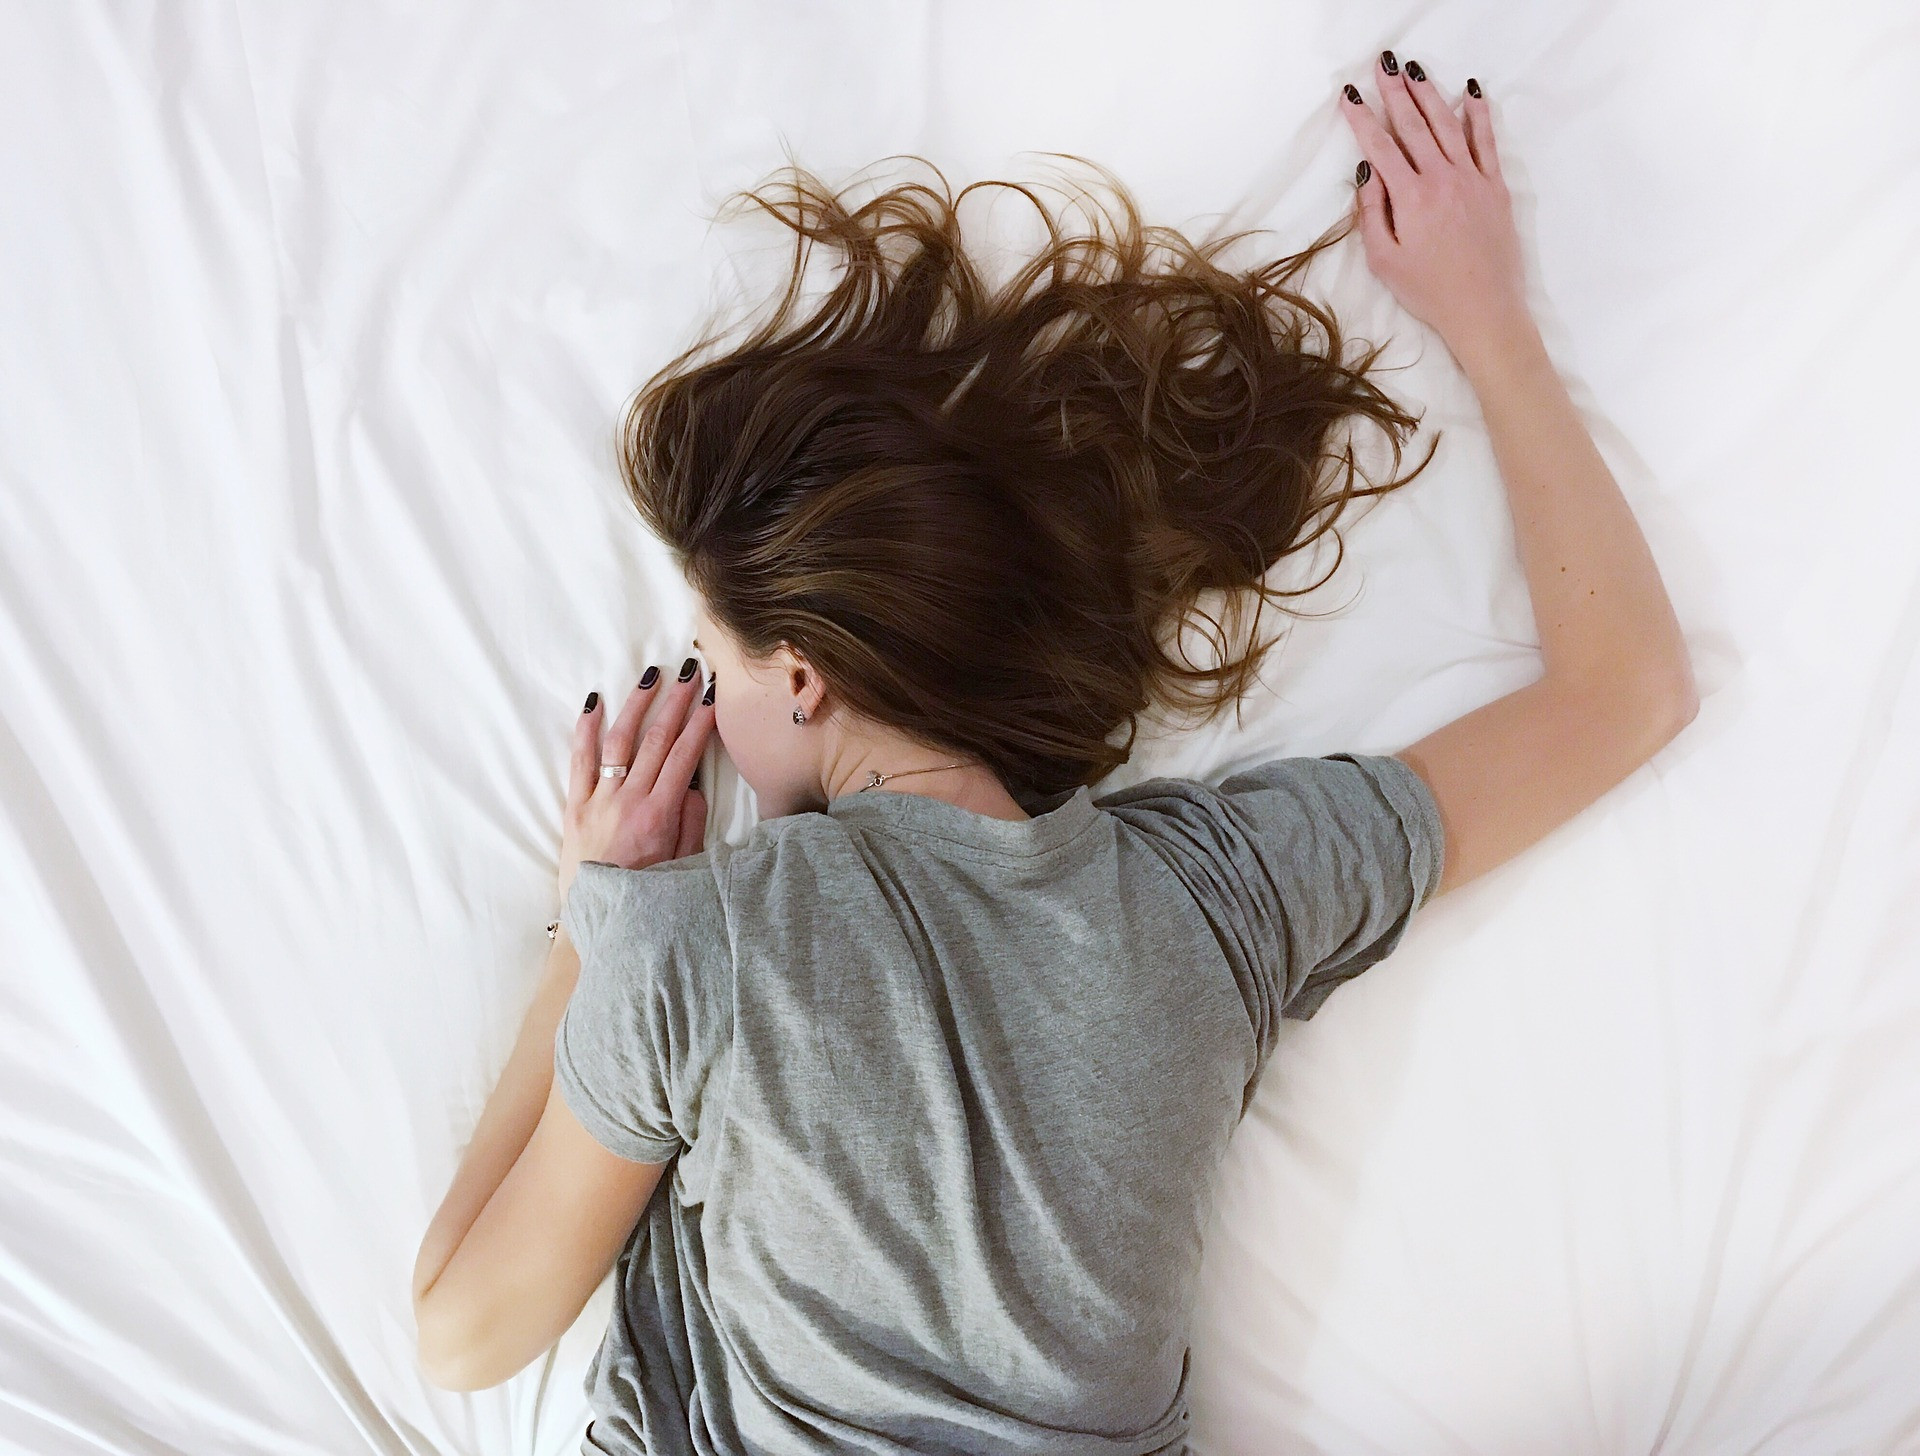 Podľa National Sleep Foundation trpí väčšina Američanov nedostatkom spánku. A tento problém sa zďaleka netýka len obyvateľov zo Spojených štátov amerických. Vzhľadom k tomu, že spánok zohráva dôležitú úlohu v hormonálnej regulácii, obnove svalovej hmoty, vývoji pamäti a udržiavaní správne fungujúceho metabolizmu, môže dlhodobý nedostatok spánku viesť k nárastu hmotnosti, úzkostiam, depresii a inzulínovej rezistencii.

Tým pádom hrozí riziko vzniku cukrovky 2. typu, vysokého krvného tlaku a srdcových ochorení. Podľa niektorých odborníkov vám časté ponocovanie môže ubrať dokonca až desať rokov  života.